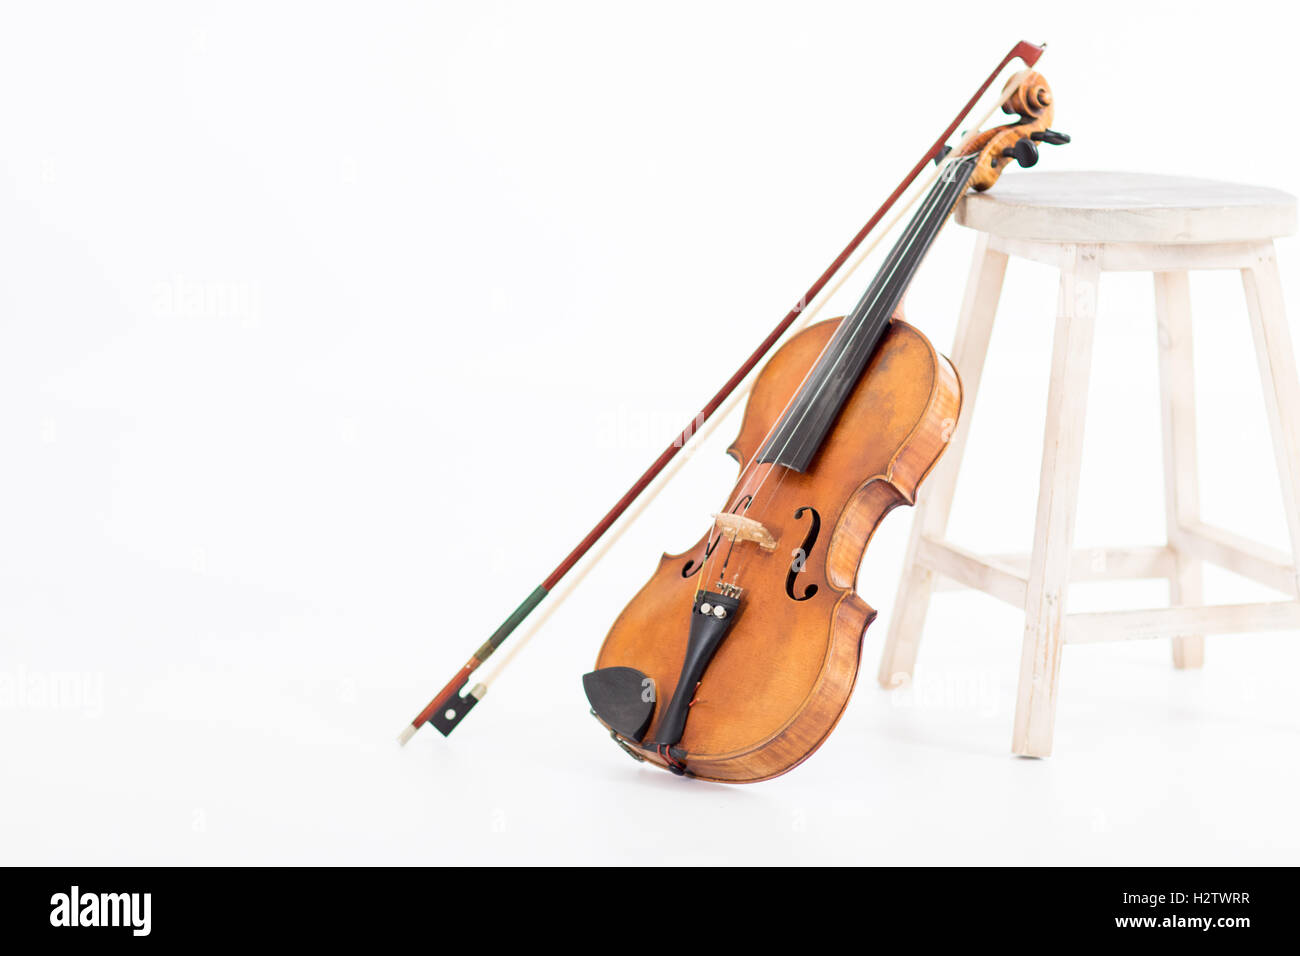 Eine alte Geige stützte sich durch einen Hocker auf weißem Hintergrund Stockfoto